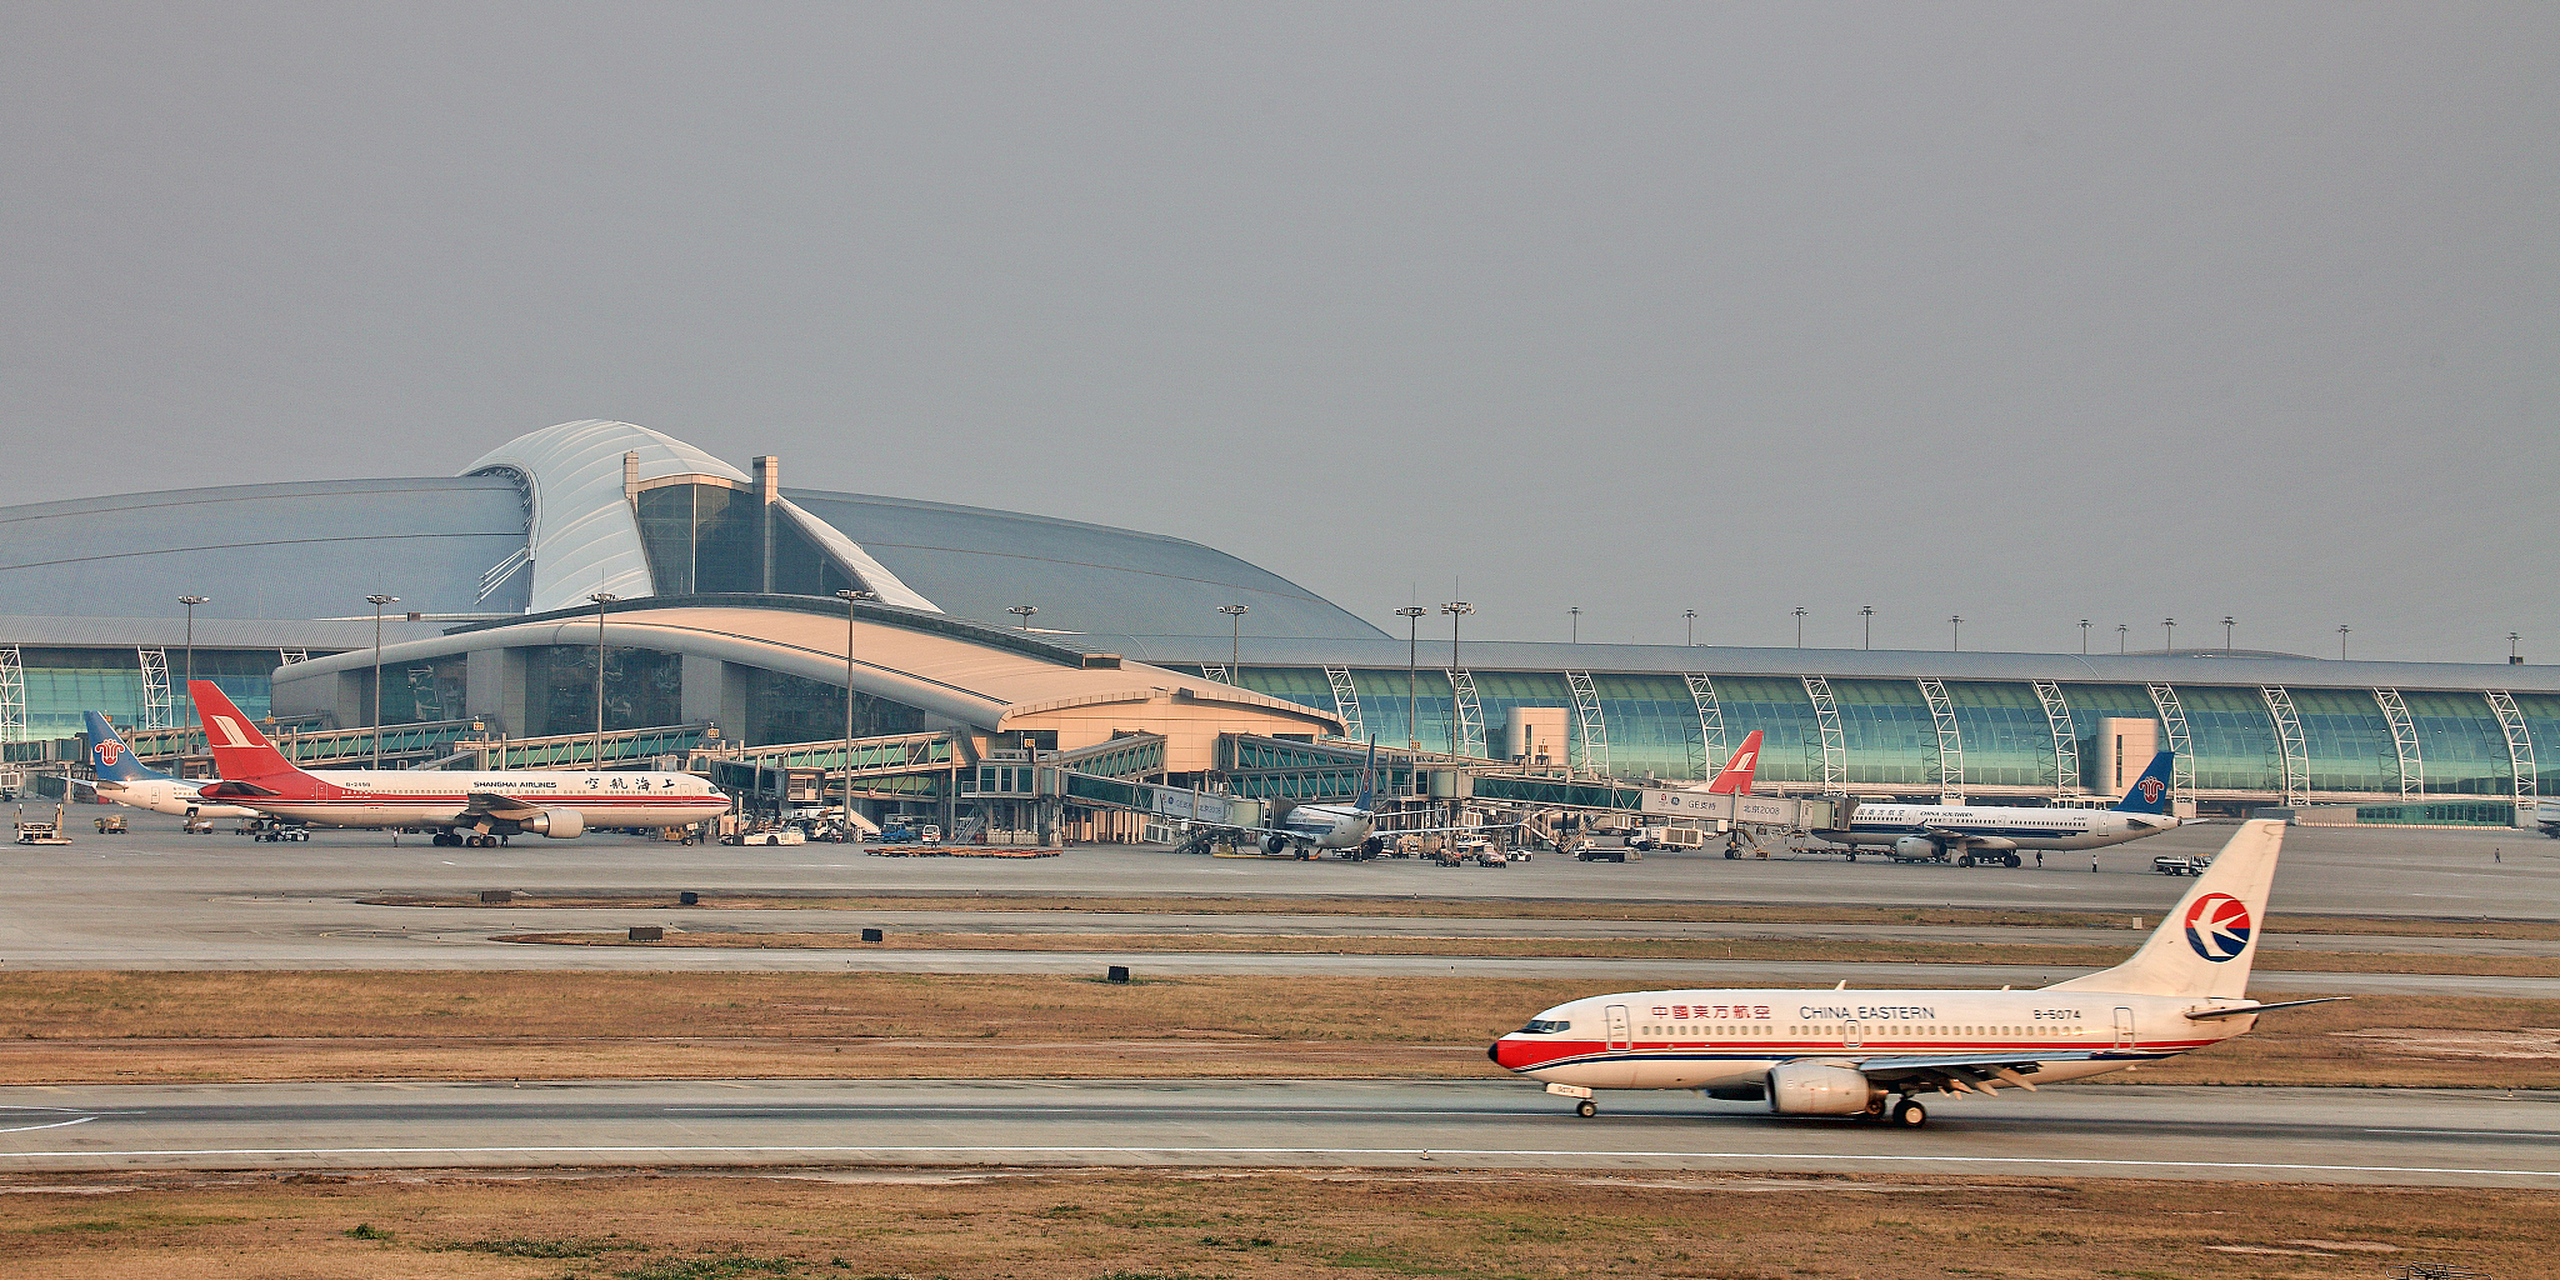 广州白云国际机场发生一起意外事故,造成一人死亡,直接经济损失百万